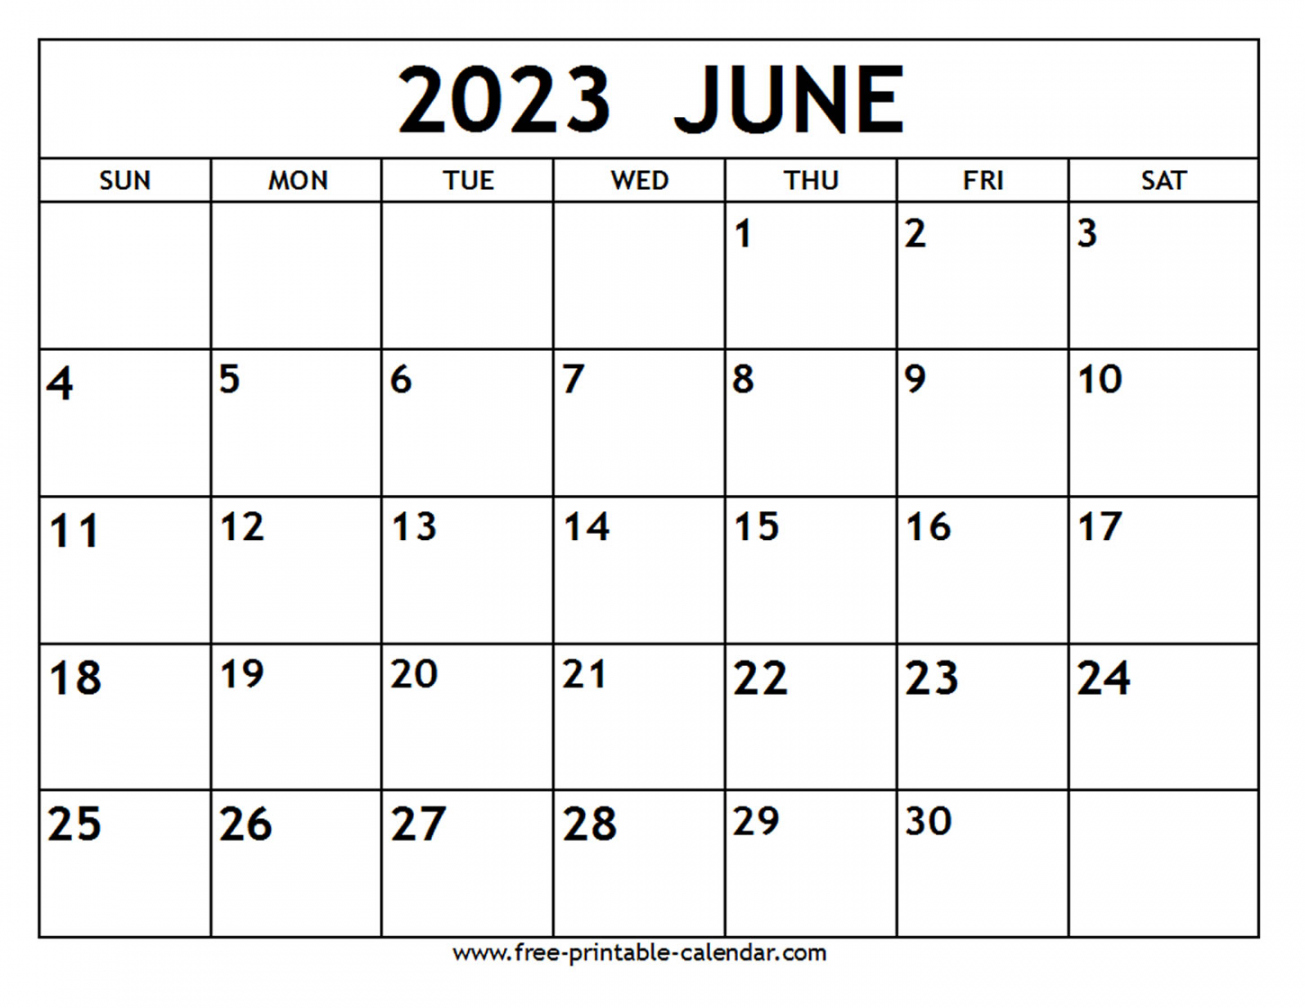 Free Printable Calendar June 2023 - Printable - June  Calendar - Free-printable-calendar